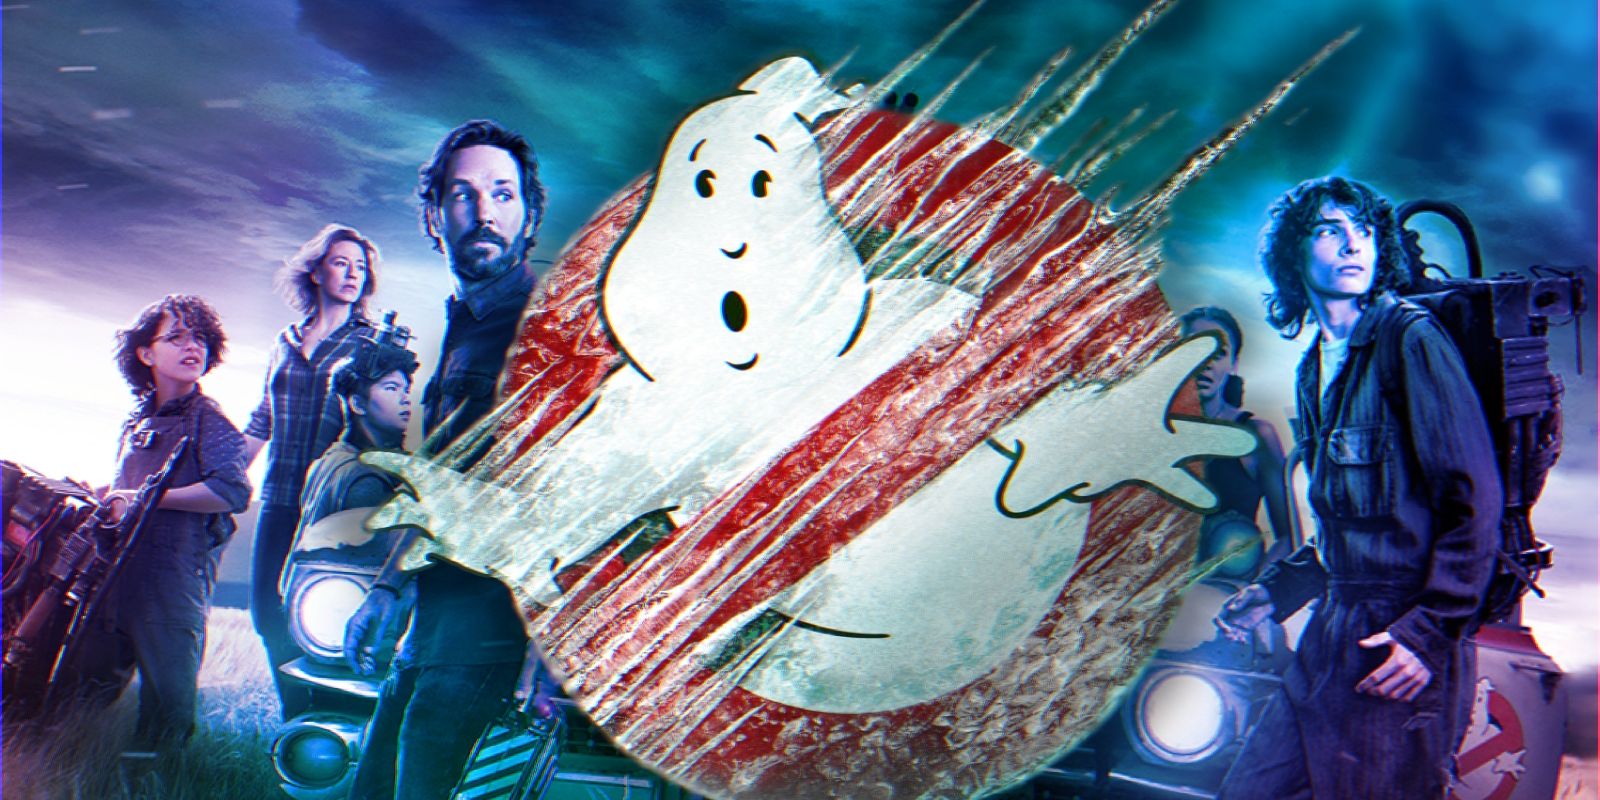 Logotipo de Ghostbusters: Frozen Empire na frente do pôster do Afterlife